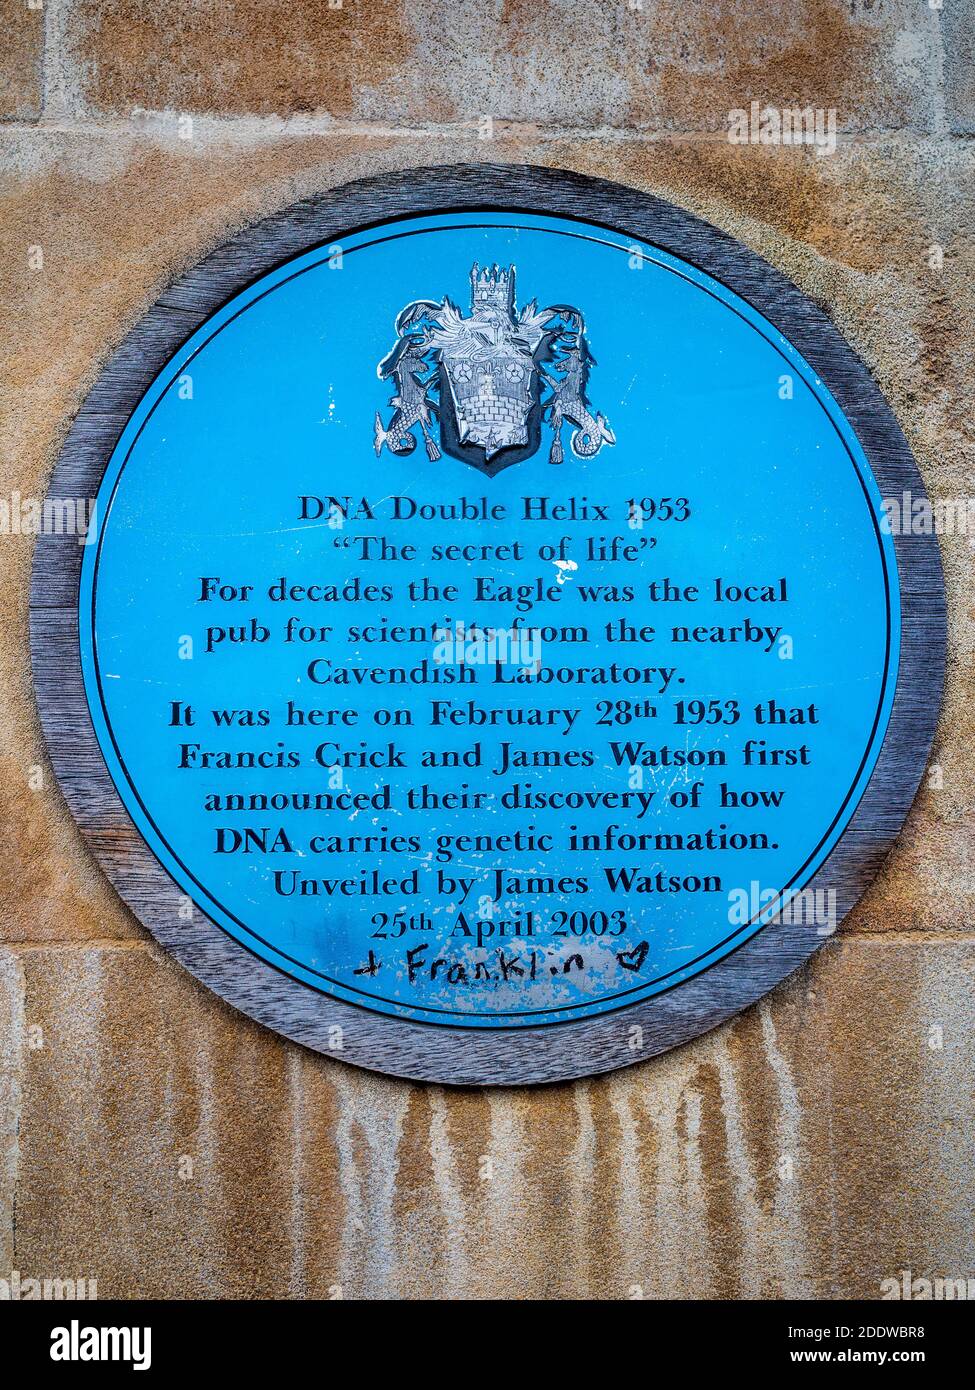 Plaque commémorant la découverte de la structure à double hélice de l'ADN par Crick et Watson sur l'Eagle Pub Cambridge - le nom de Rosalind Franklin a été ajouté. Banque D'Images